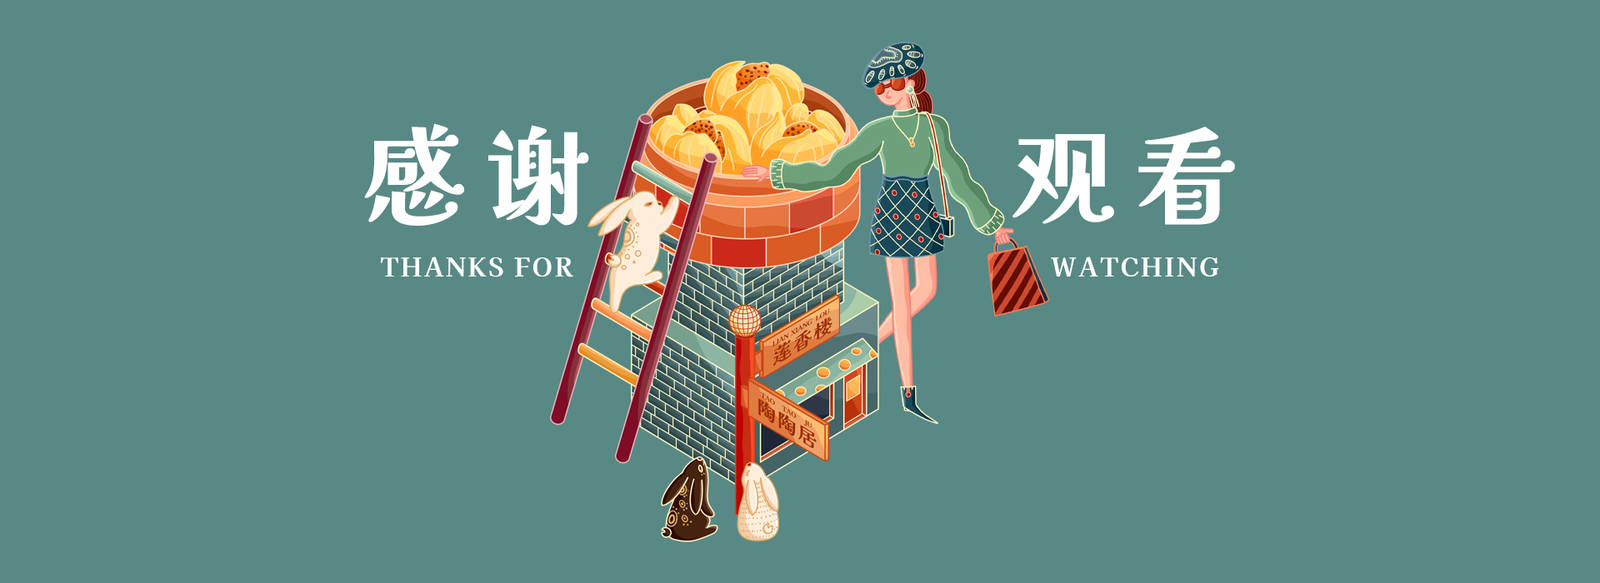 广州叹茶城KV品牌餐饮插画设计-第6张